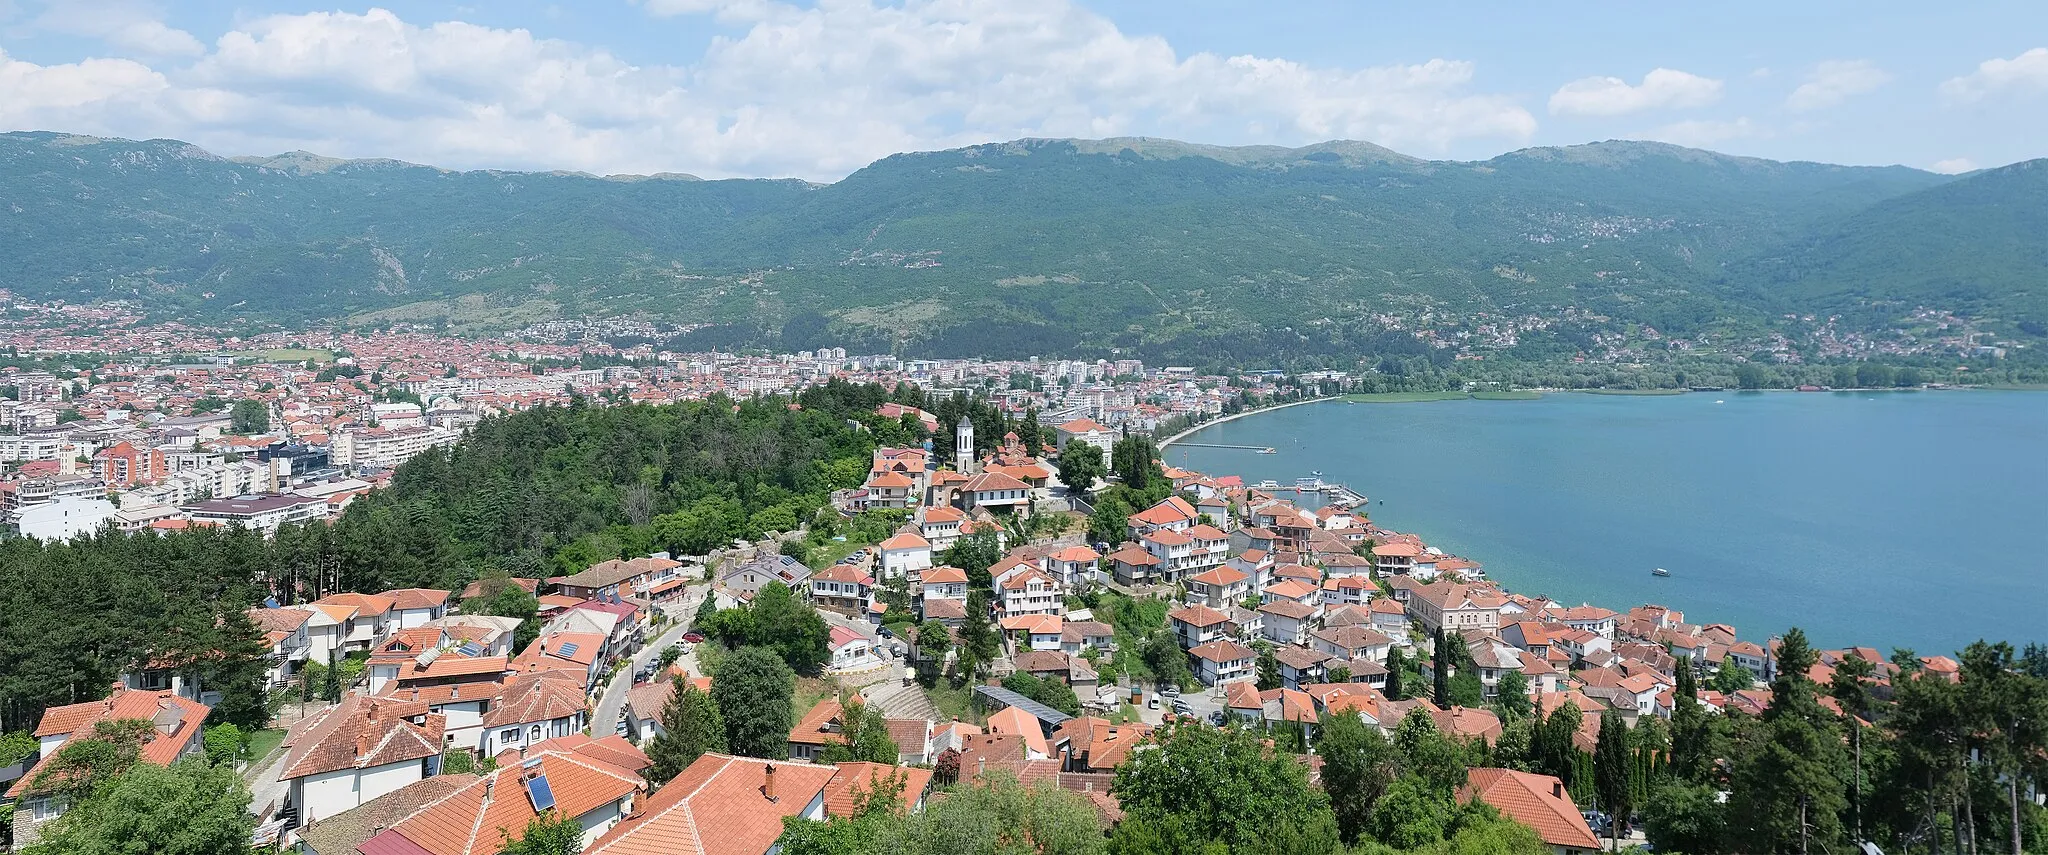 Image of Ohrid